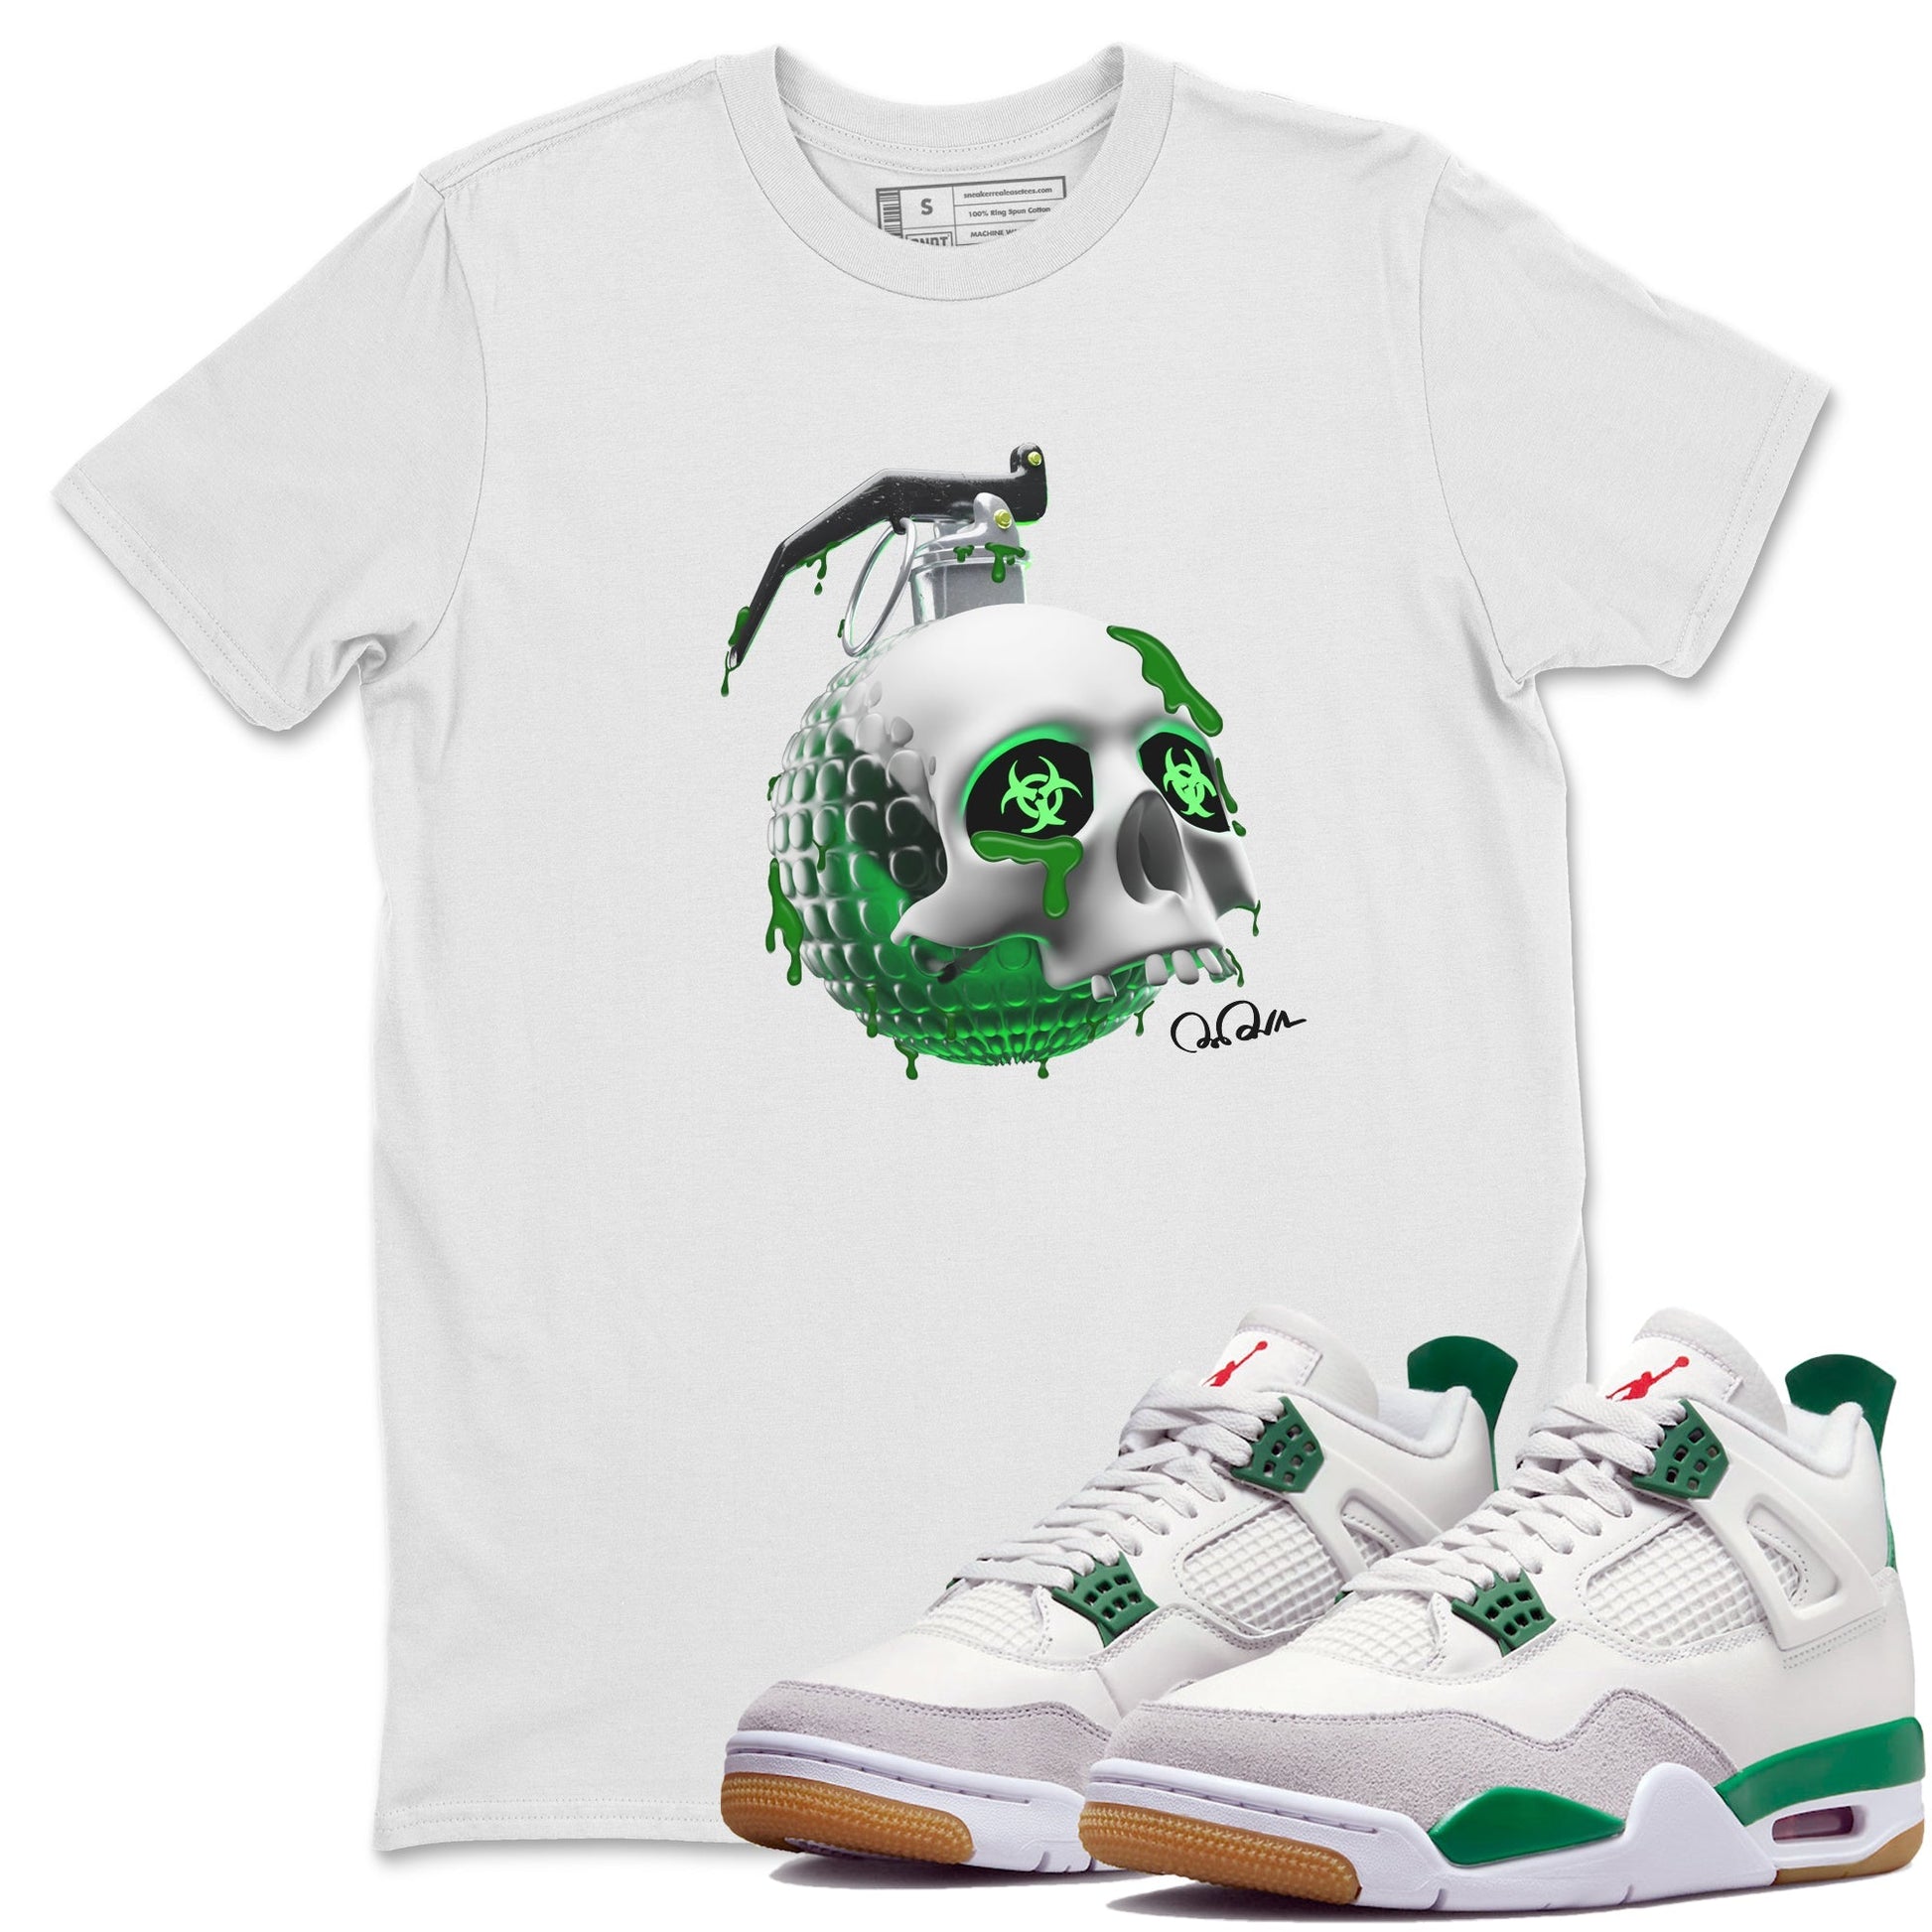 Air Jordan 4 Pine Green Sneaker Tees Drip Gear Zone Skull Bomb Sneaker Tees AJ4 Pine Green Shirt Unisex Shirts White 1